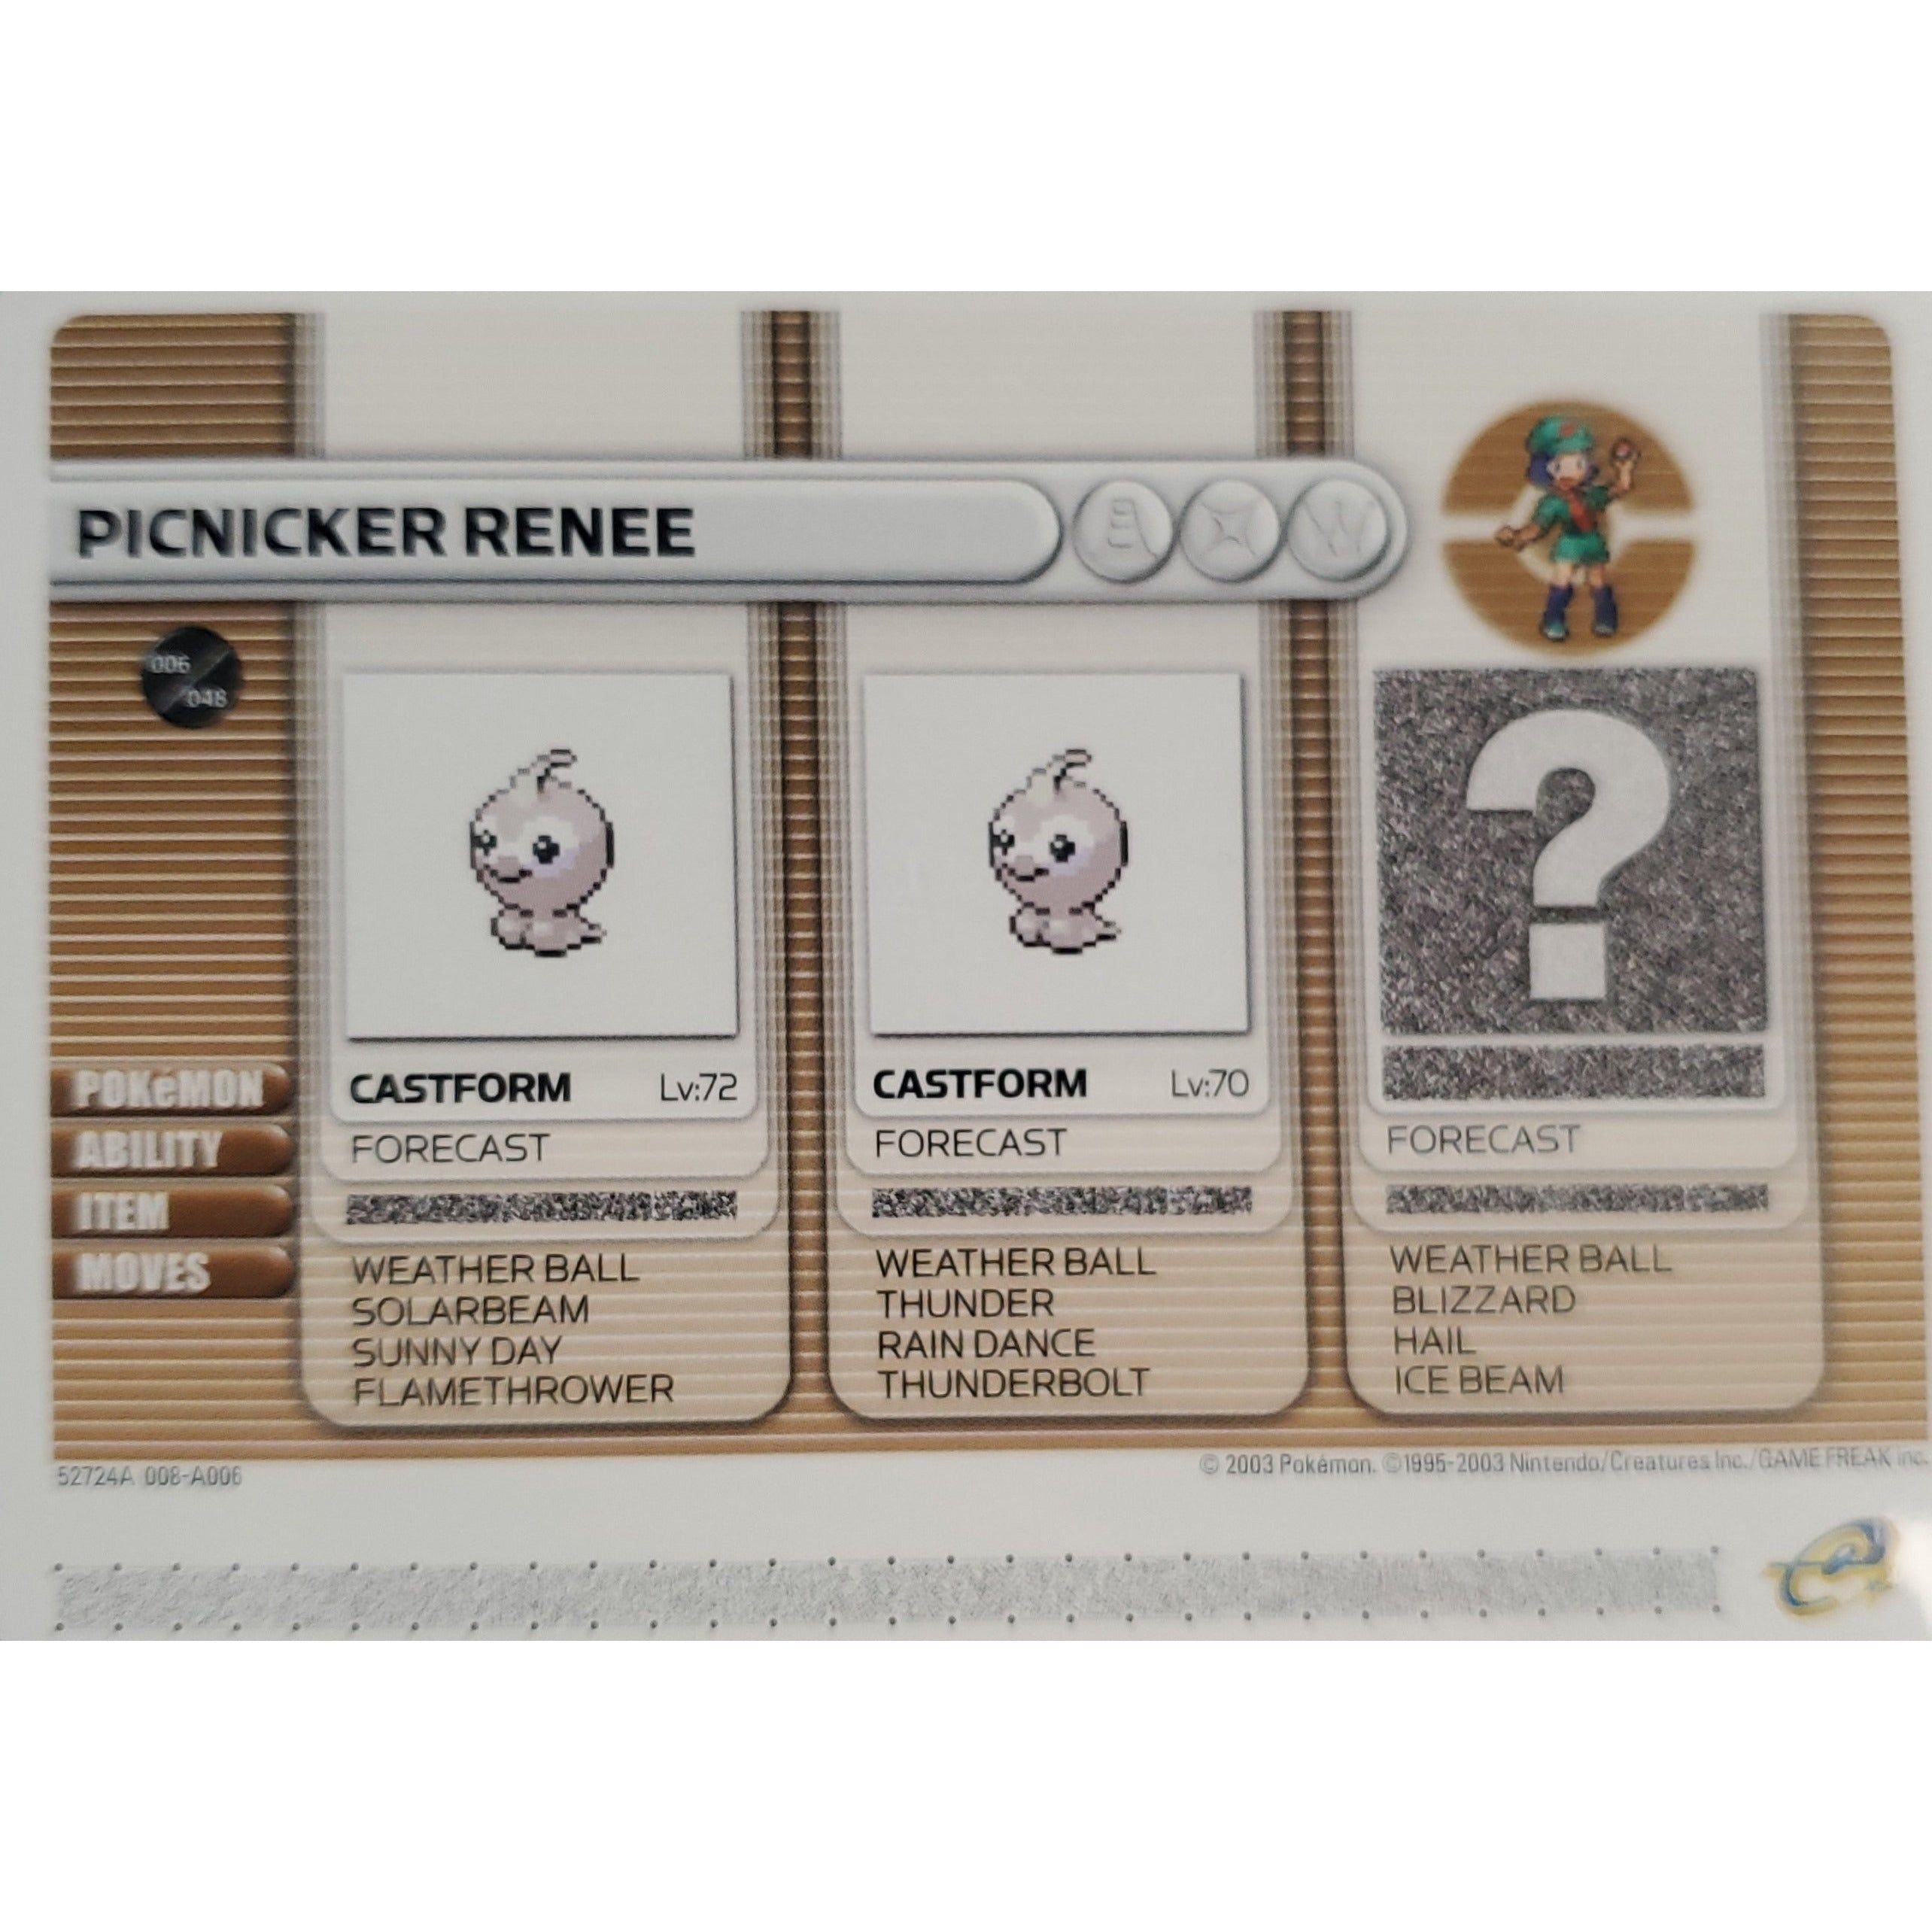 GBA - Pokemon Battle Card - Picnicker Renee